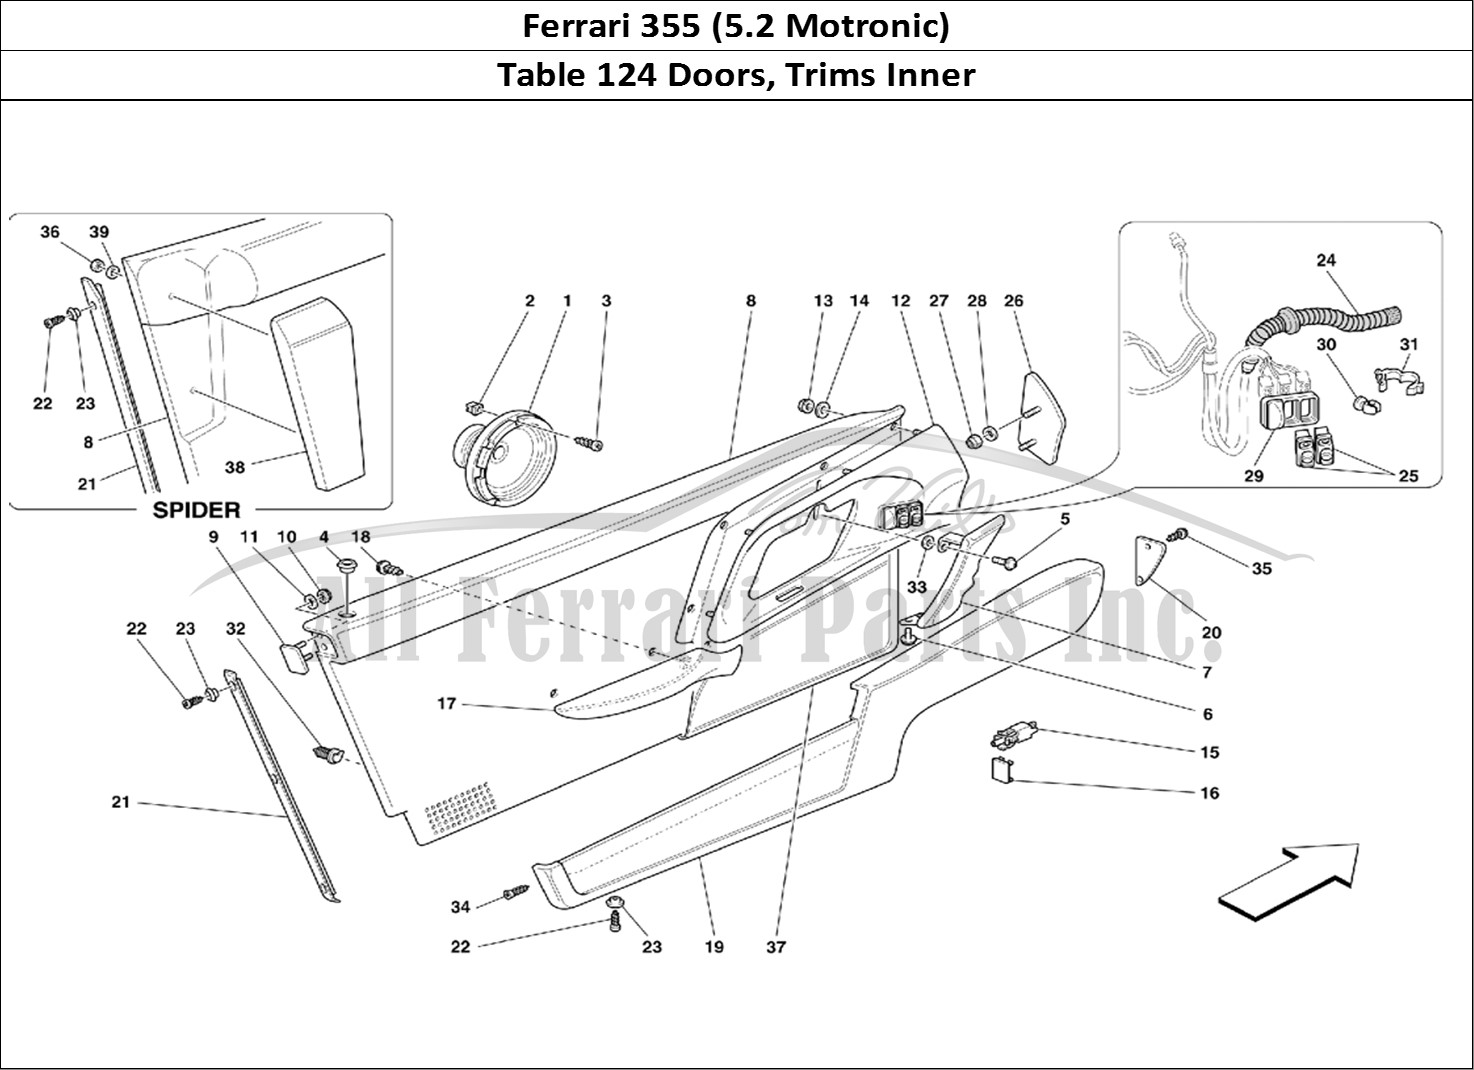 Ferrari Parts Ferrari 355 (5.2 Motronic) Page 124 Doors - Inner Trims